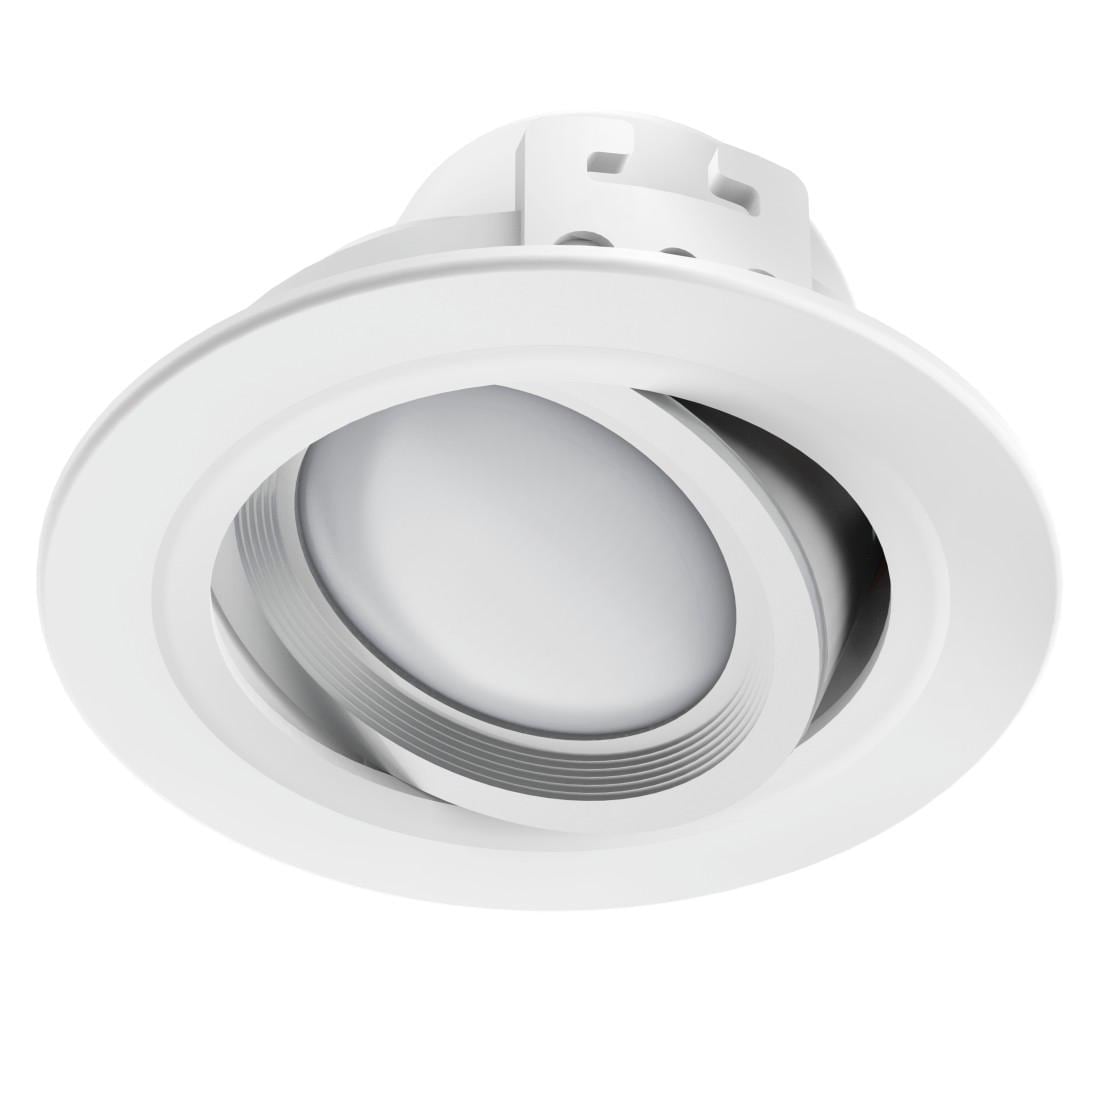 Smarte LED-Leuchte »WLAN LED Einbauspot, 5W, Sprachsteuerung, Appsteuerung, verstellbar«